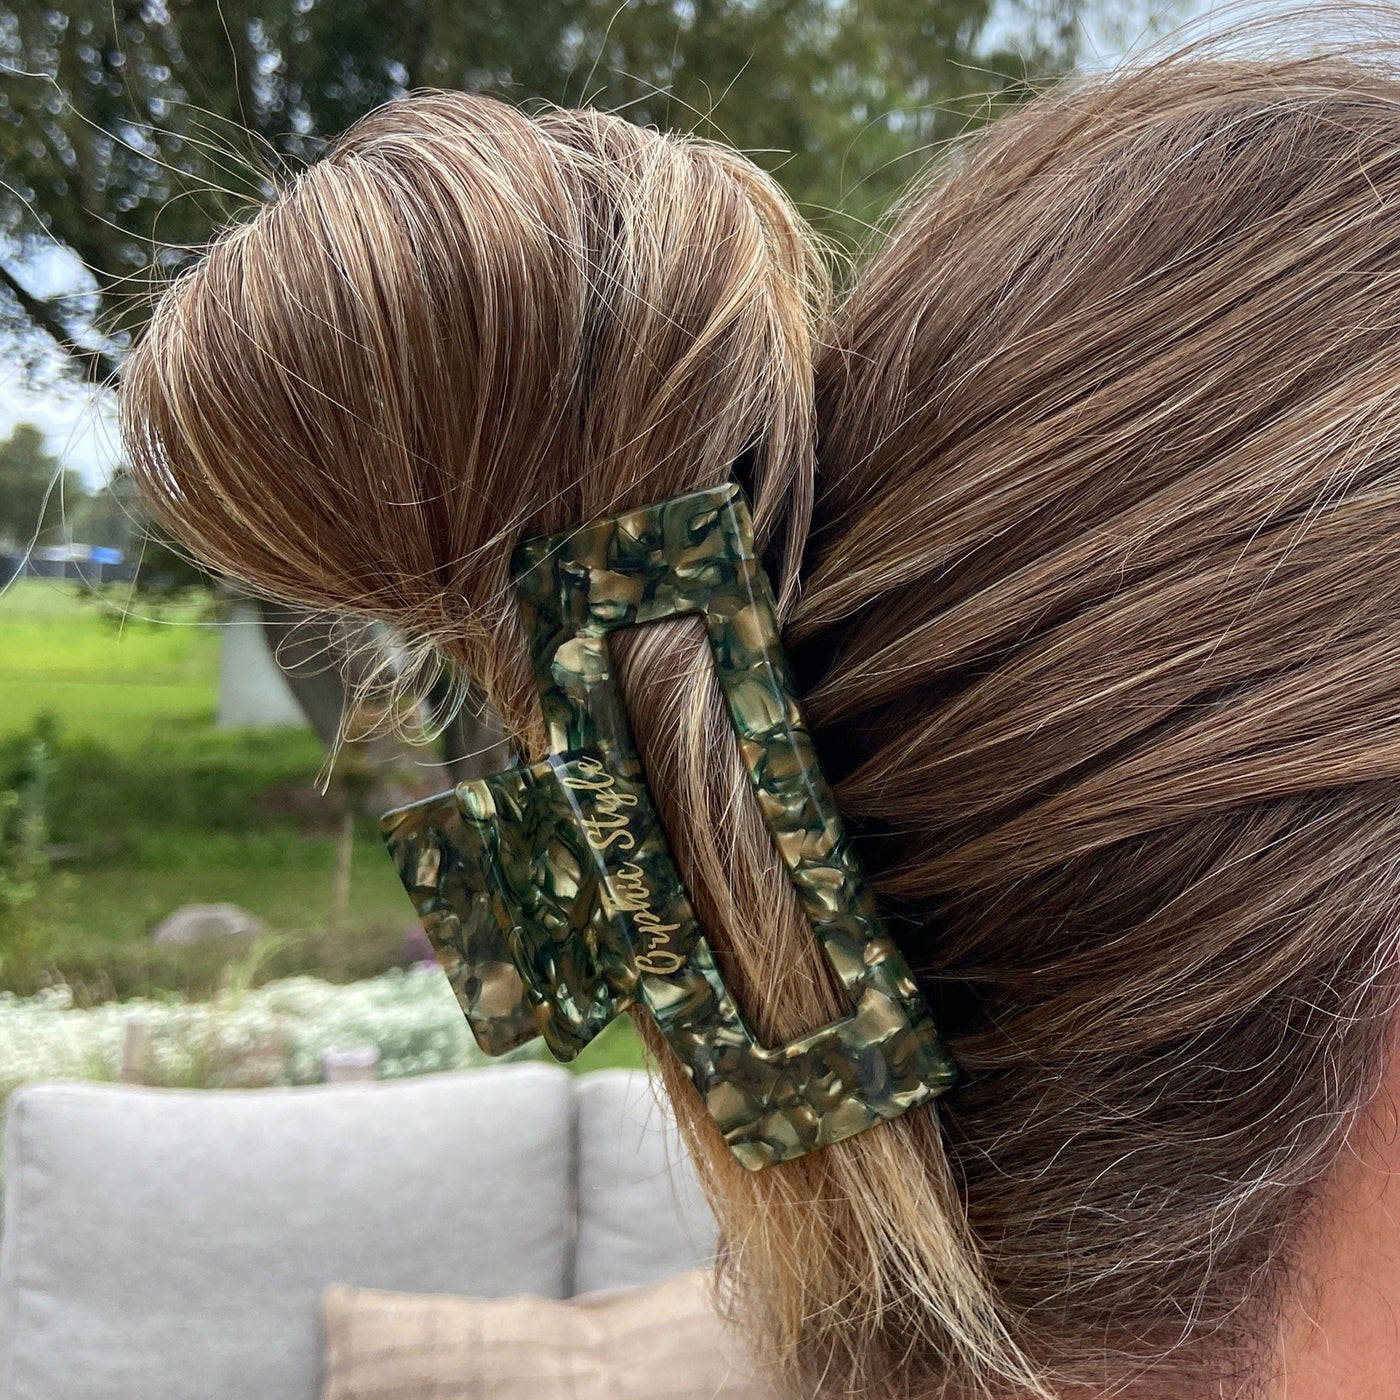 Udforsk hårklemmer - Lena grøn hårklemme fra Orphic Style – en elegant hårklemme, der kombinerer stil, funktionalitet og enkelhed - hårklemmer designet til tyndt og tykt hår